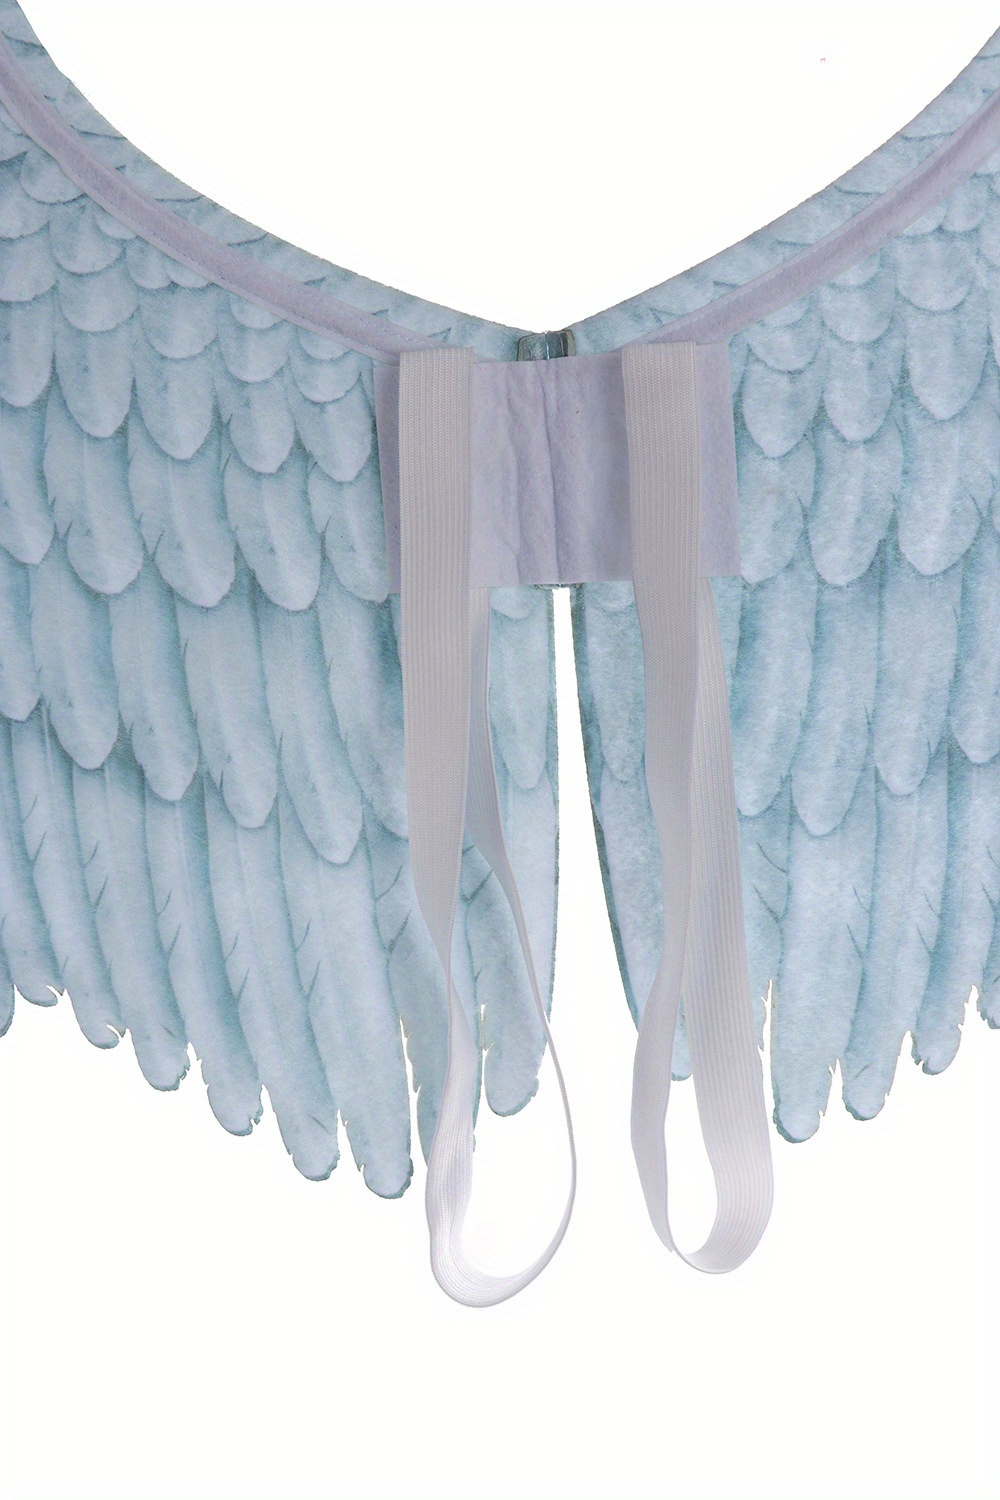 Alas de ángel grandes para adultos, alas decorativas para disfraces, tela  no tejida impresa para fiestas, Halloween, carnaval, Mardi Gras, para  Blanco Macarena alas de ángel adulto